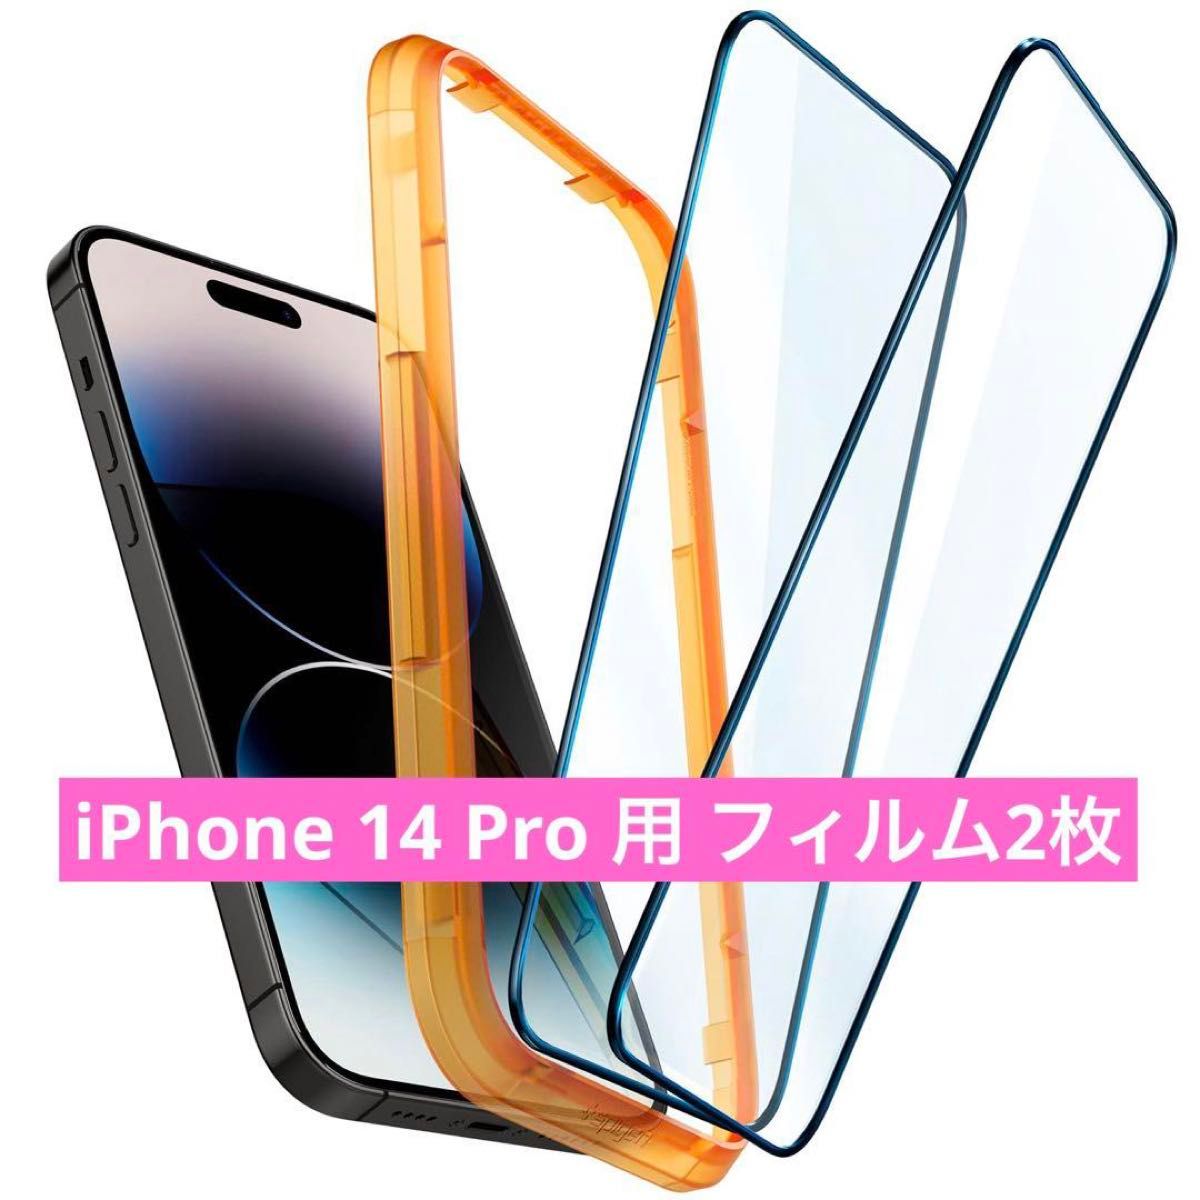 全面保護 ガラスフィルム iPhone 14 Pro 用 ガイド枠付き iPhone14Pro 対応 保護 フィルム 2枚入